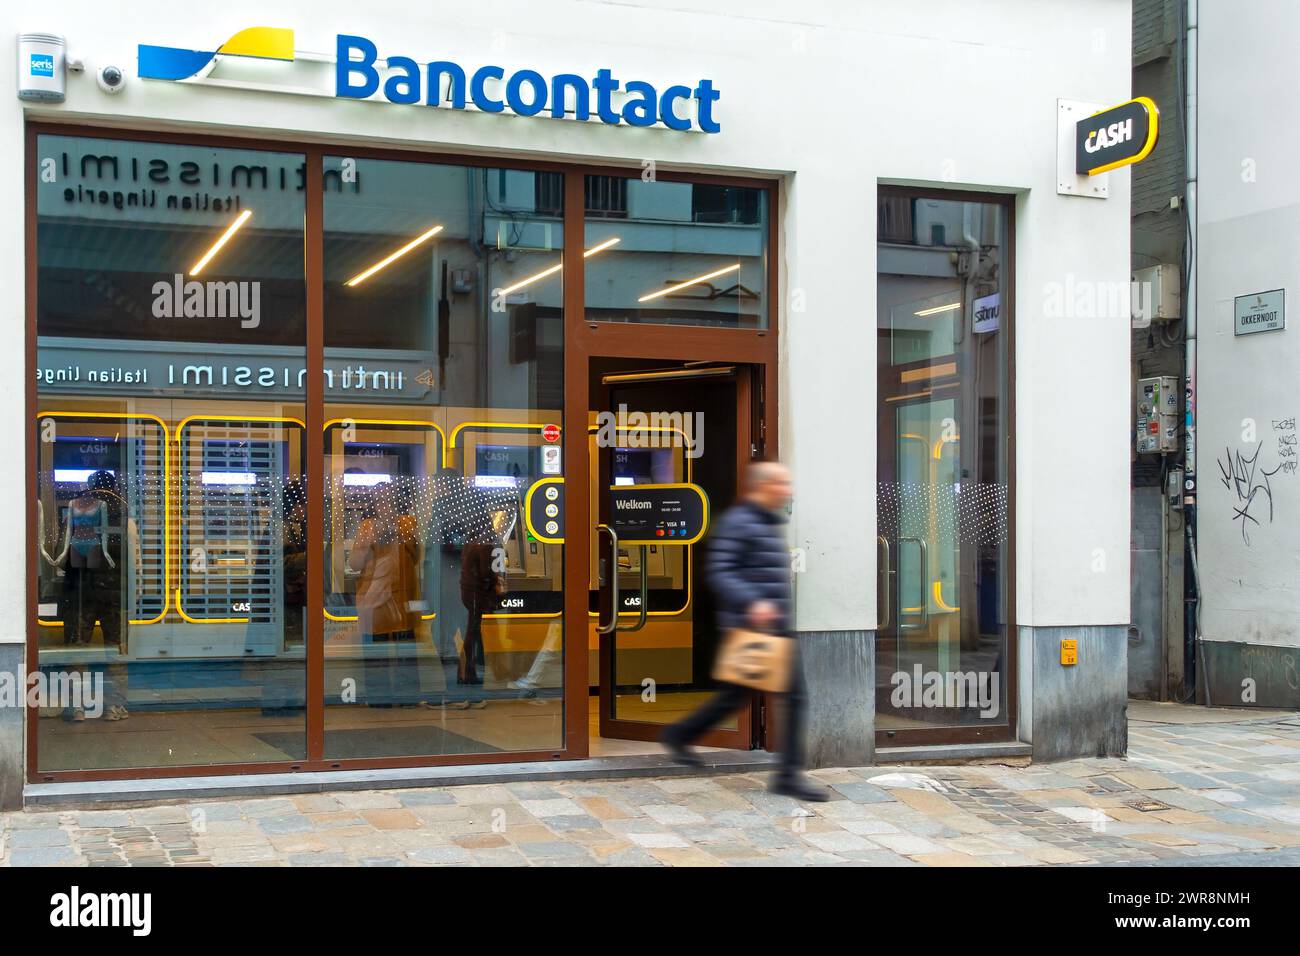 Distributeur automatique de billets intérieur de banque neutre Bancontact CASH point dans la rue commerçante dans le centre-ville de Gand / Gand, Flandre orientale, Belgique Banque D'Images